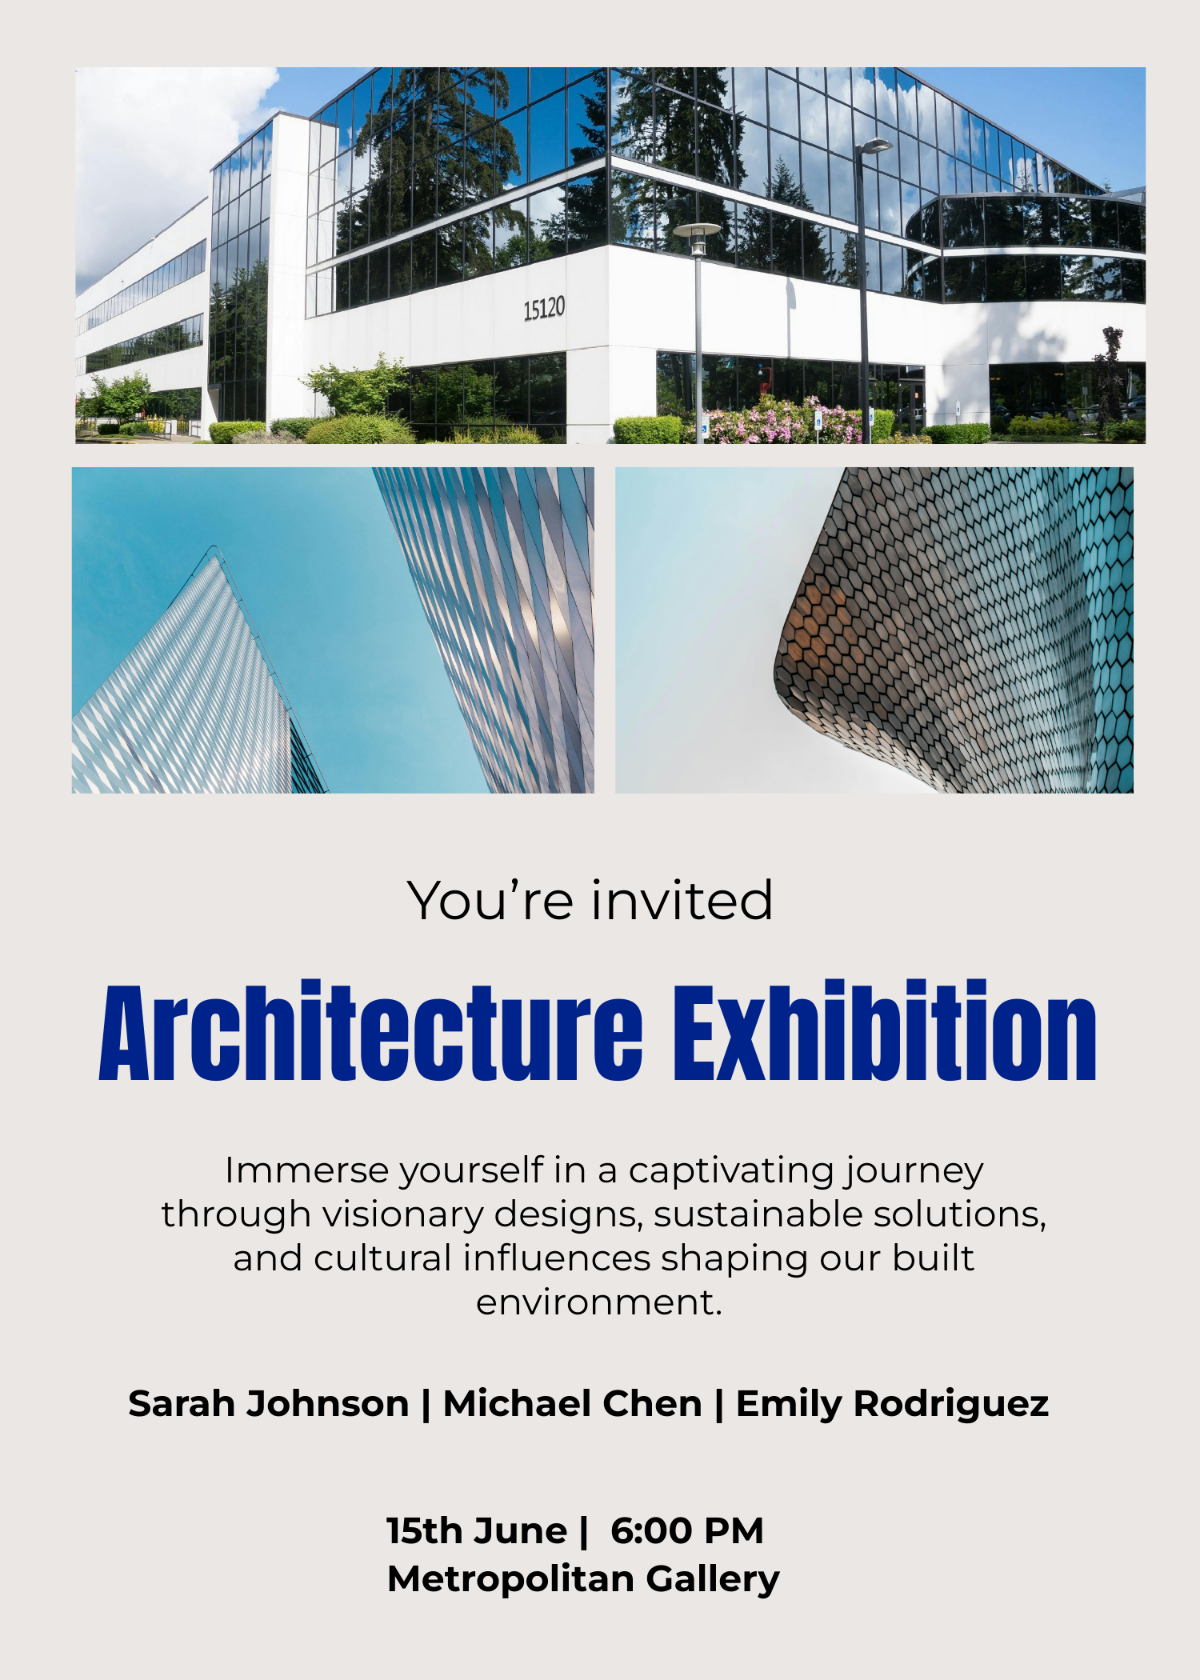 Architecture Exhibition Invitation